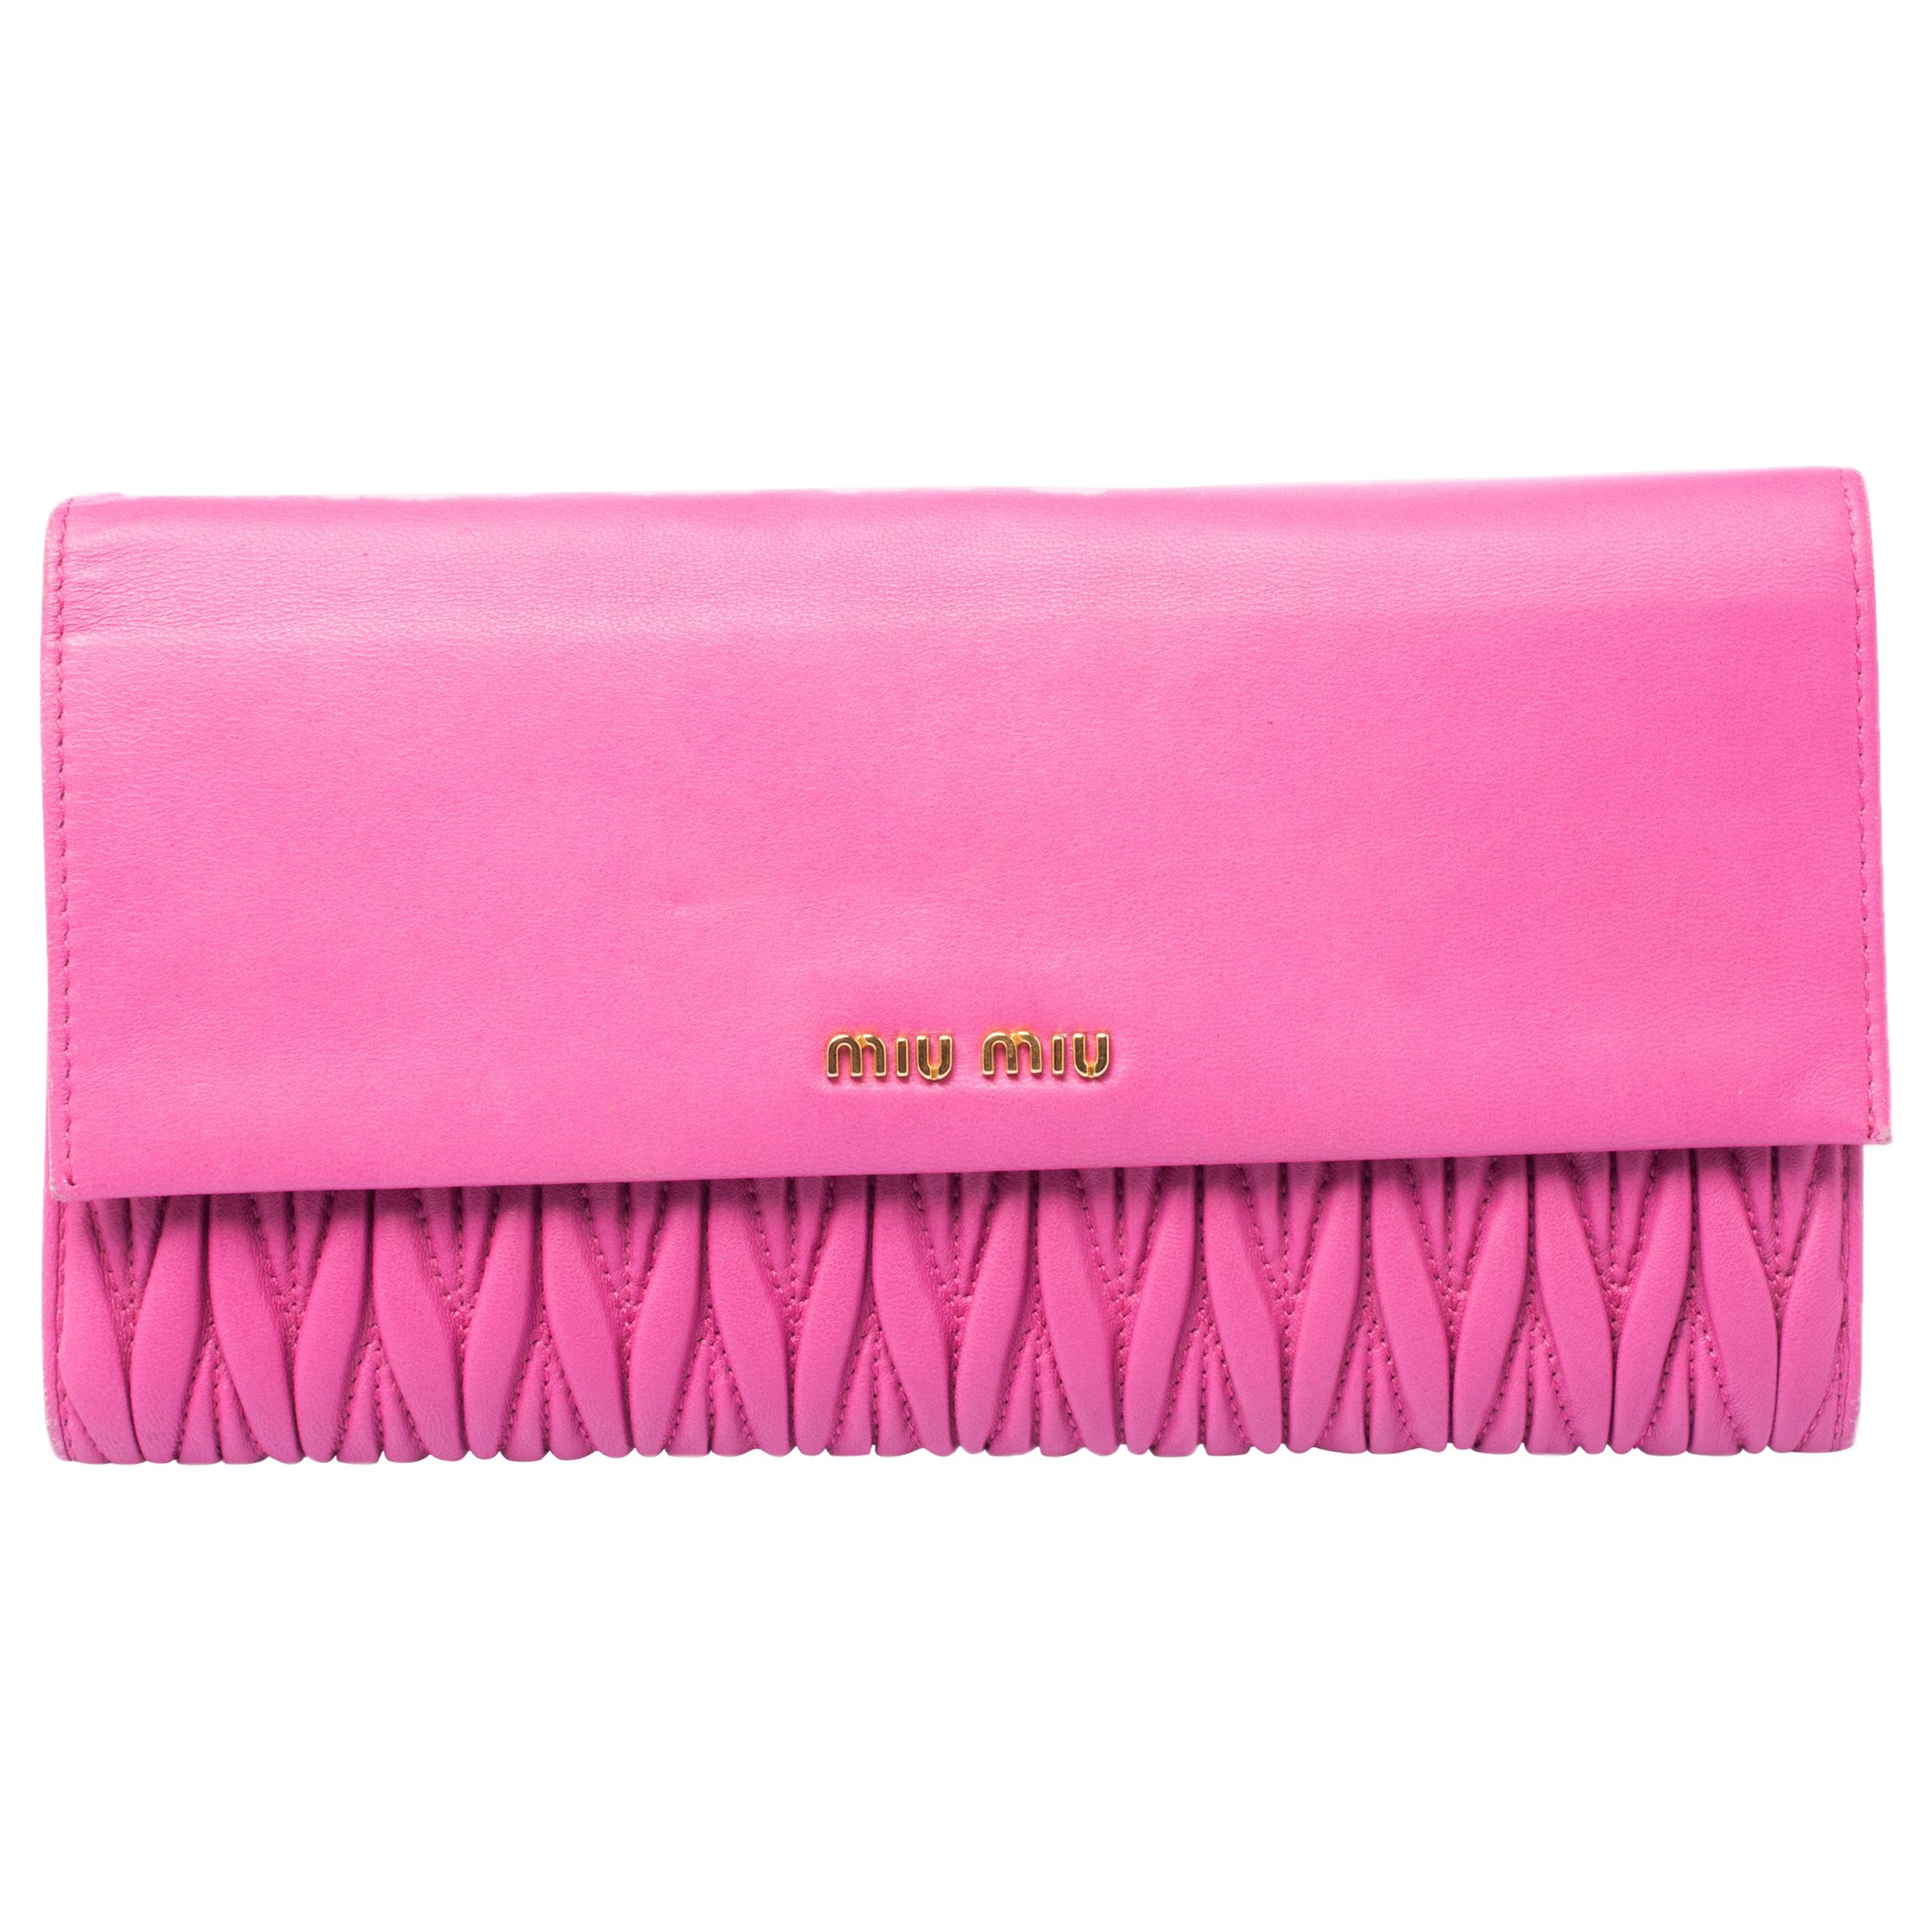 Miu Miu Pink Matelasse Leather Flap Clutch